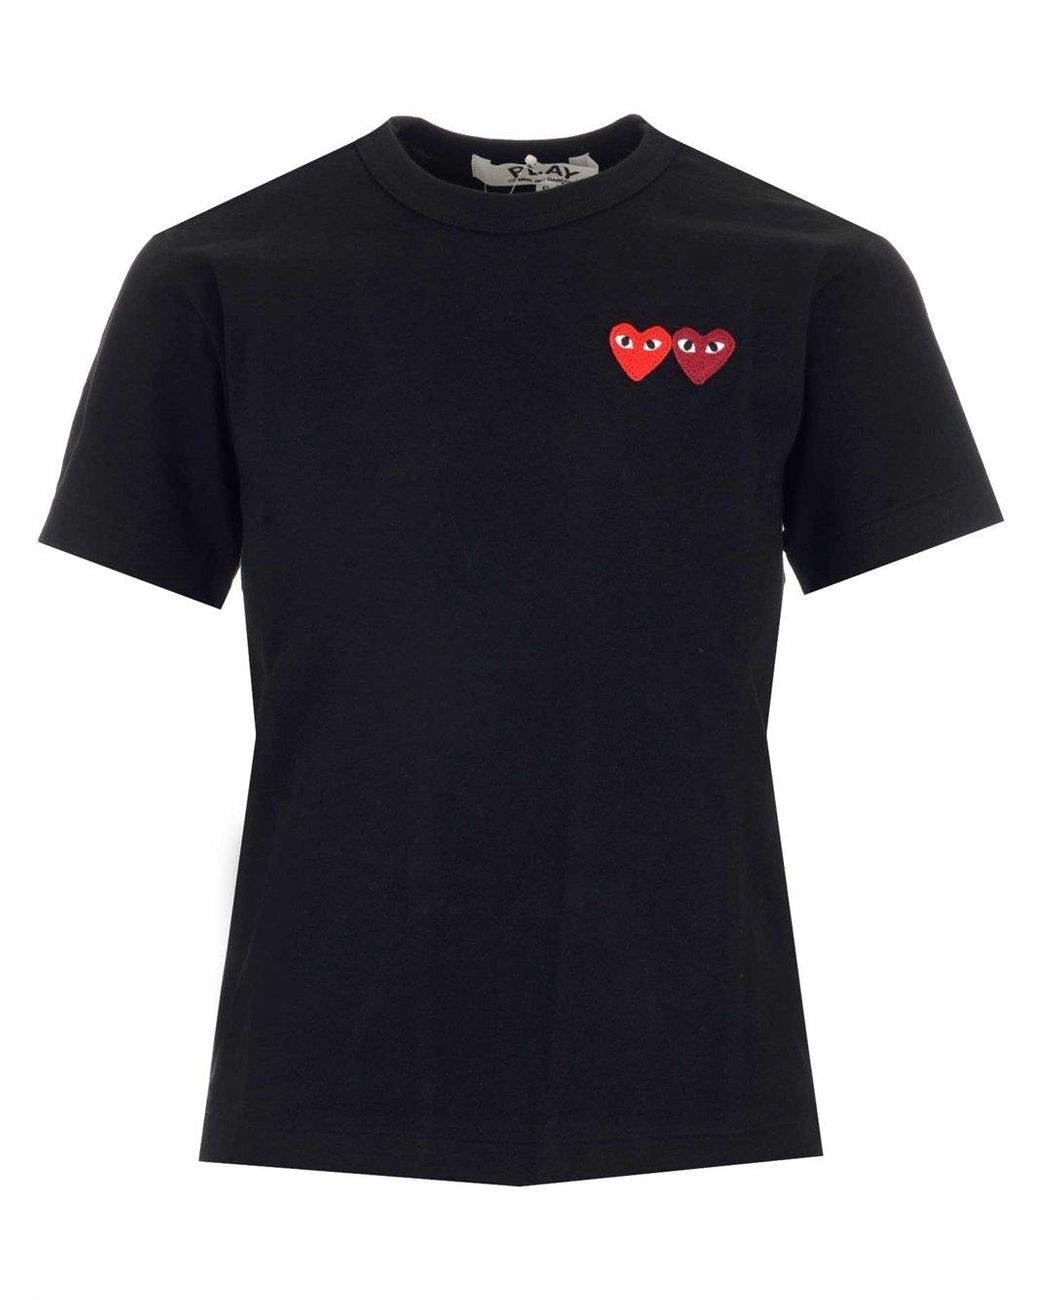 COMME DES GARÇONS PLAY Cotton Double Heart Patch T-shirt in Black - Lyst